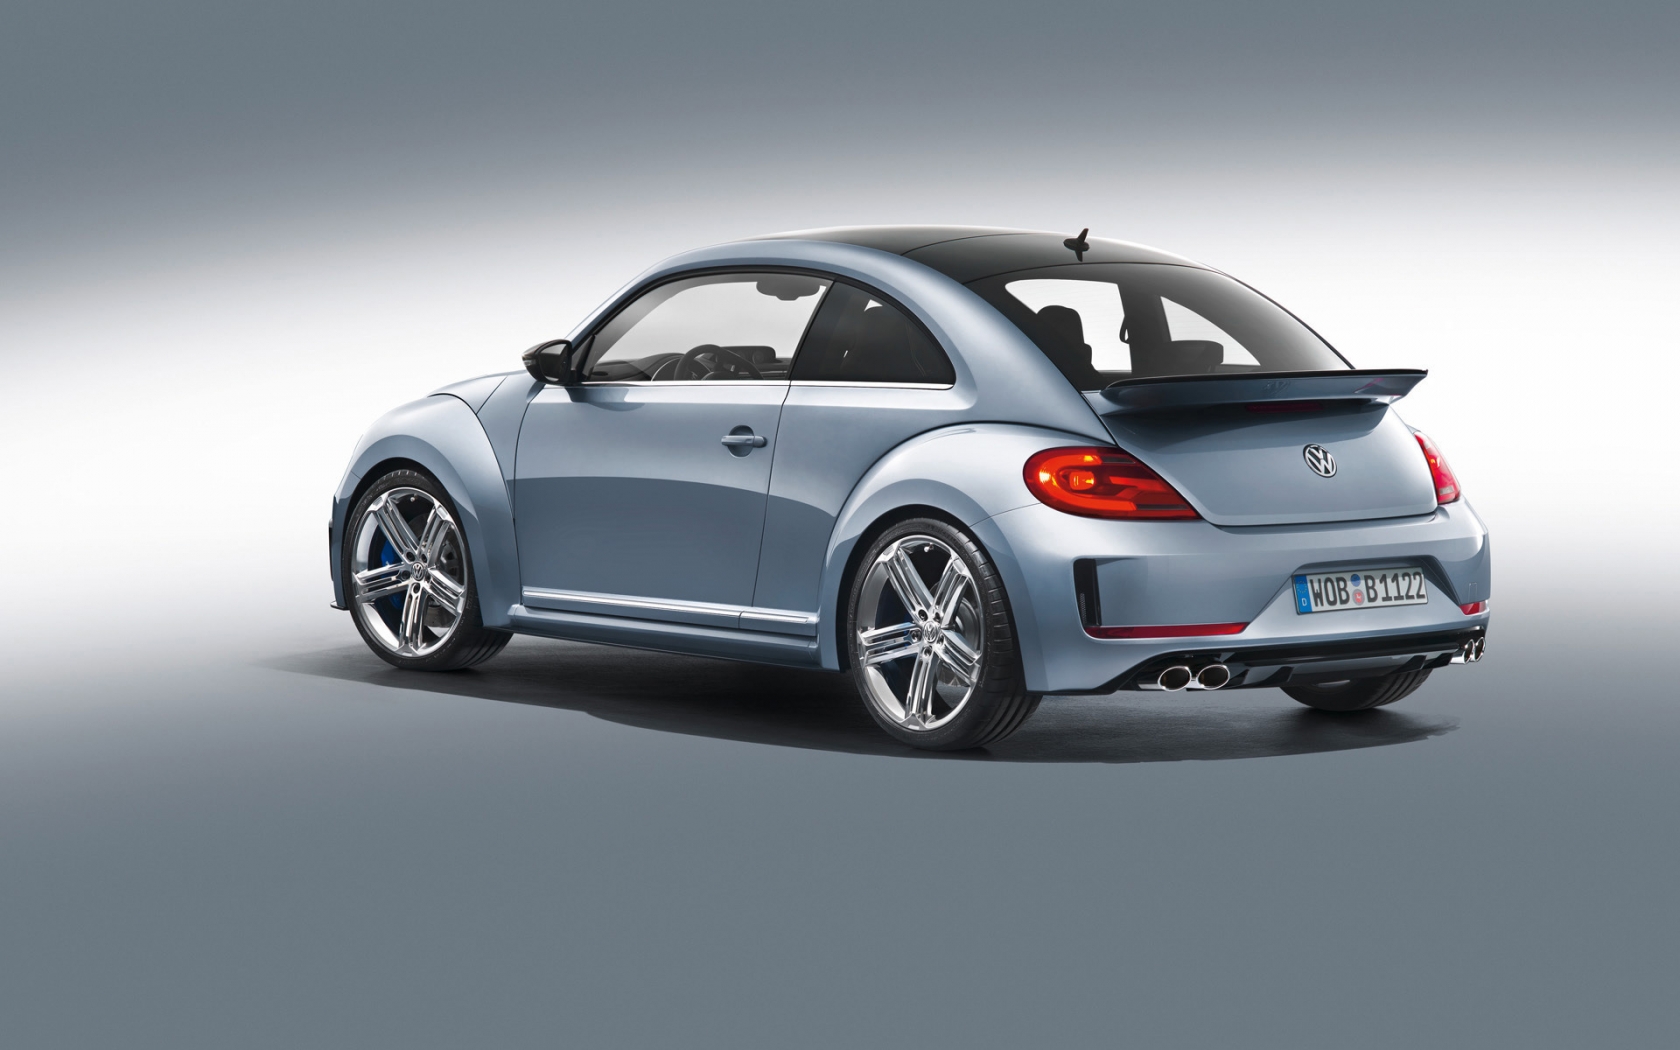 2011 Volkswagen Beetle R Concept Studio for 1680 x 1050 widescreen resolution